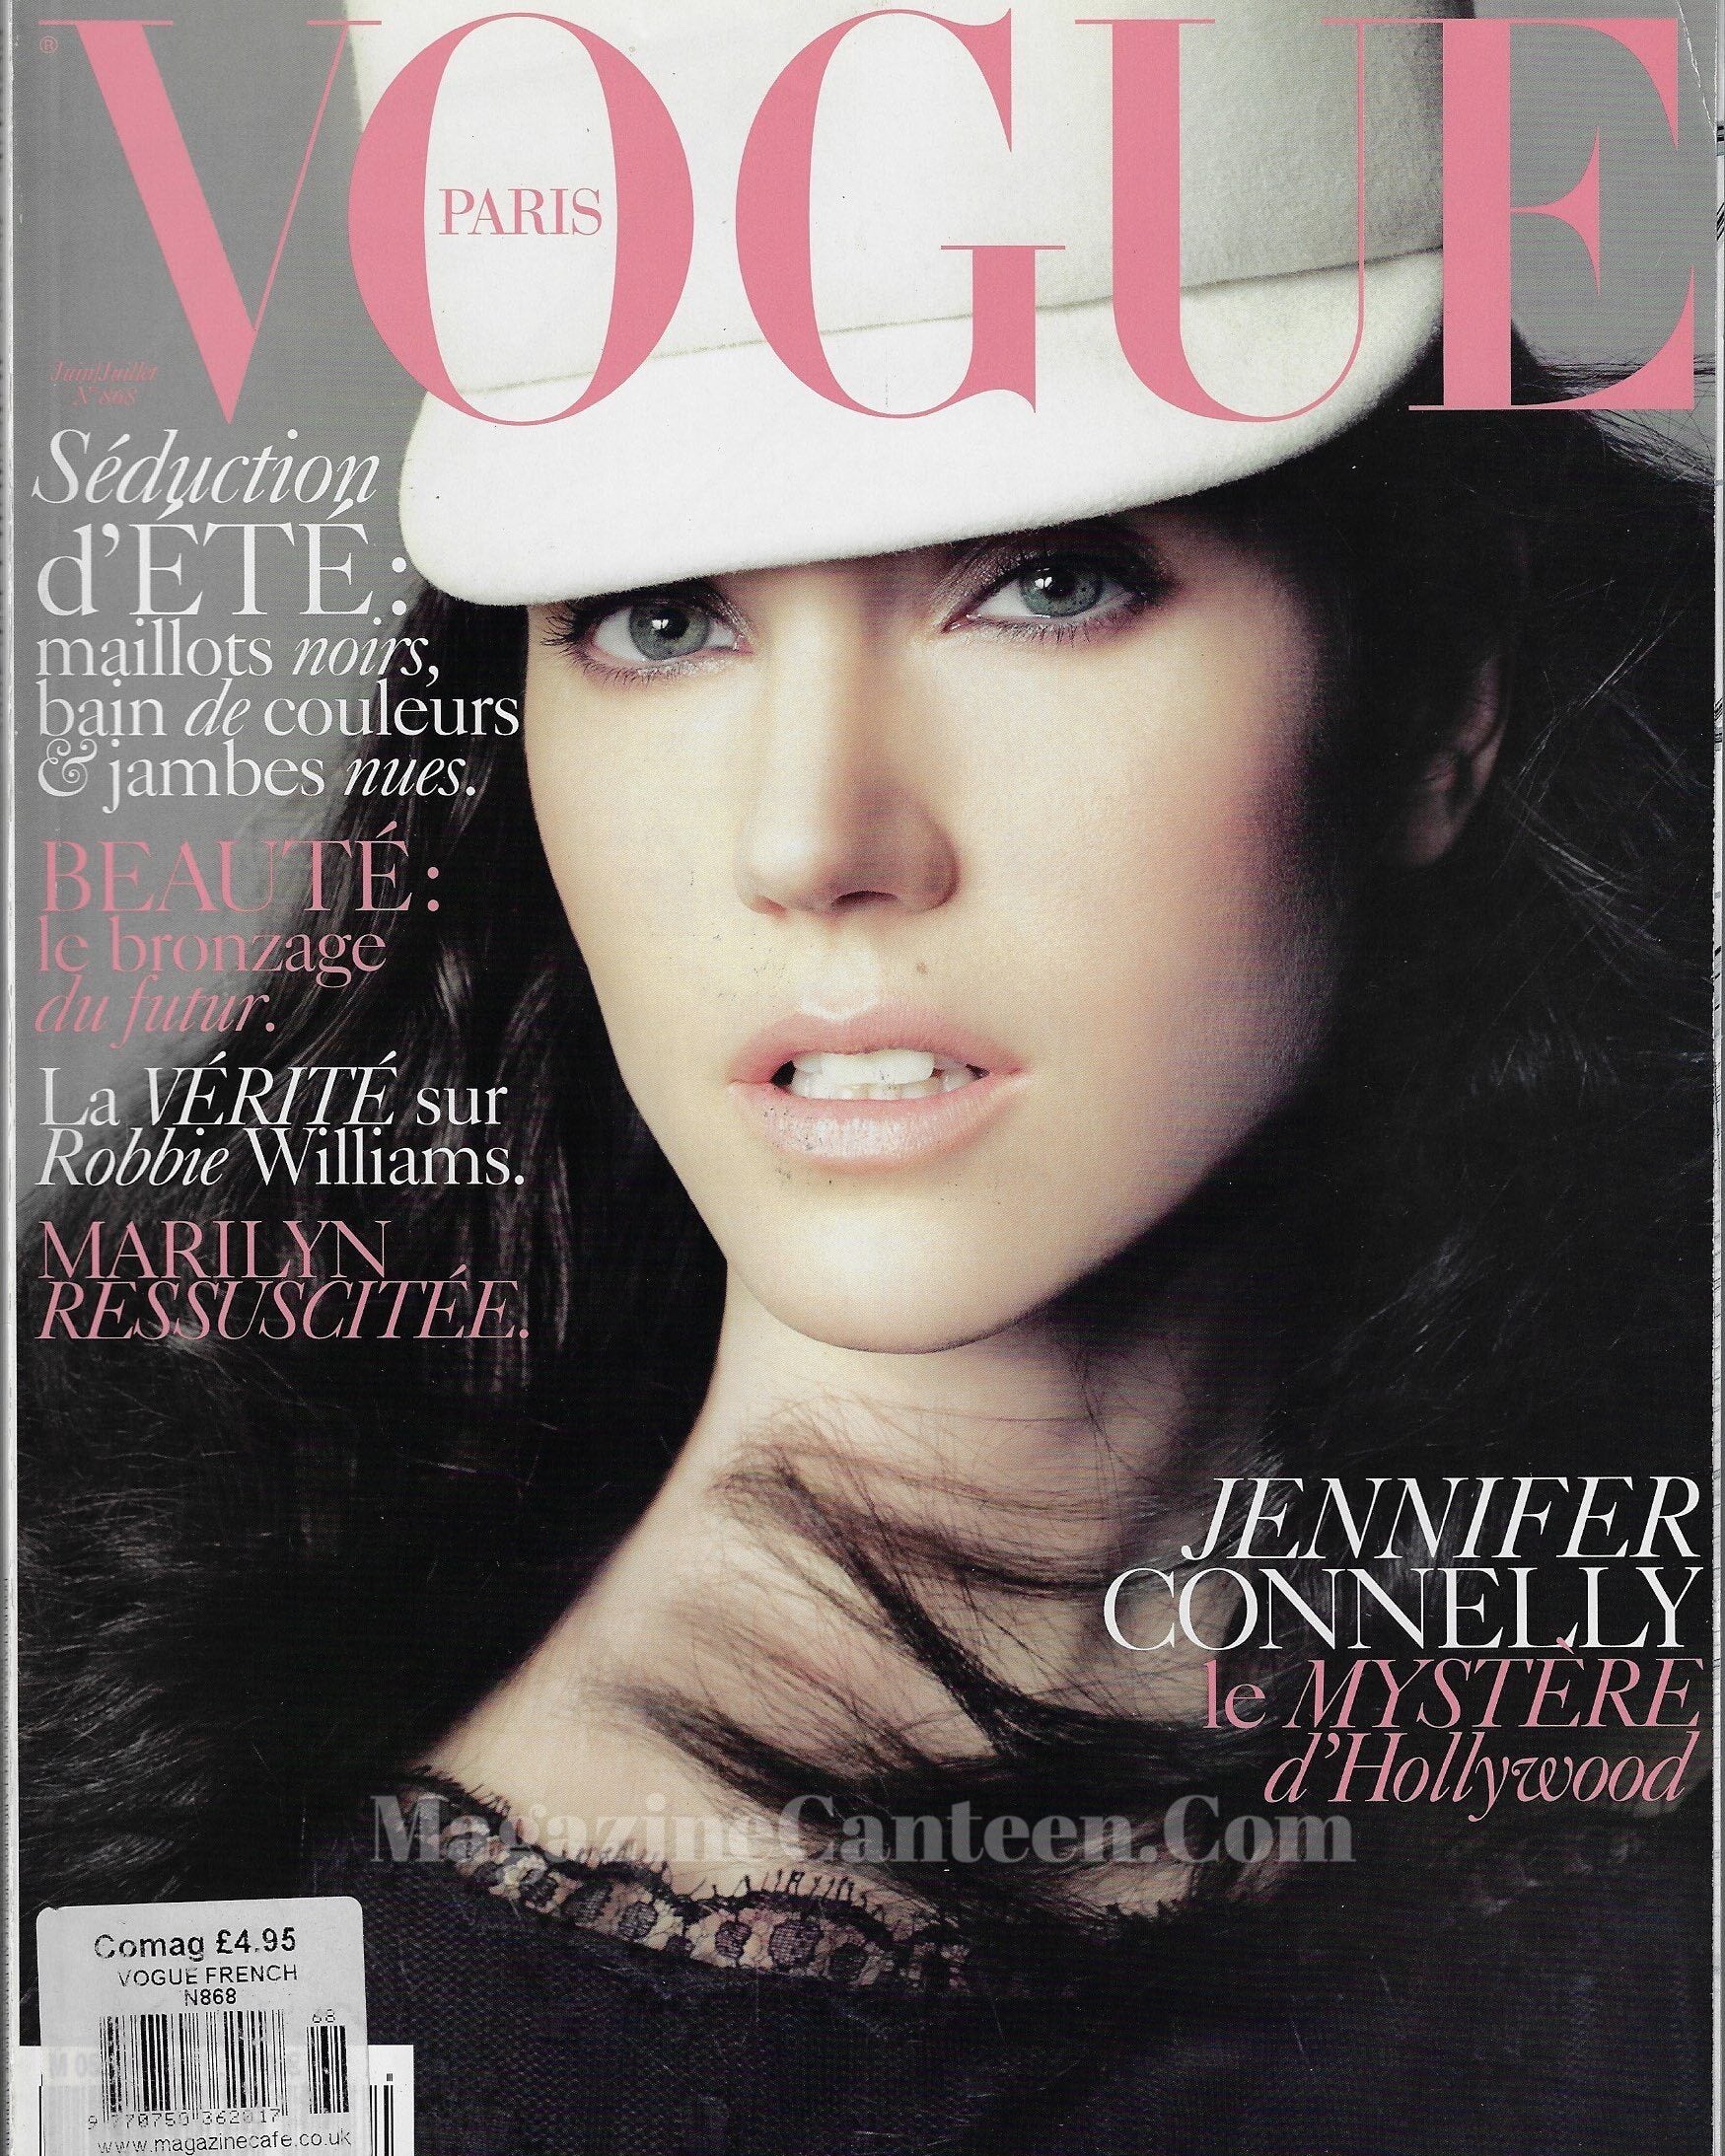 Vogue Paris Magazine 2006 - Jennifer Connelly